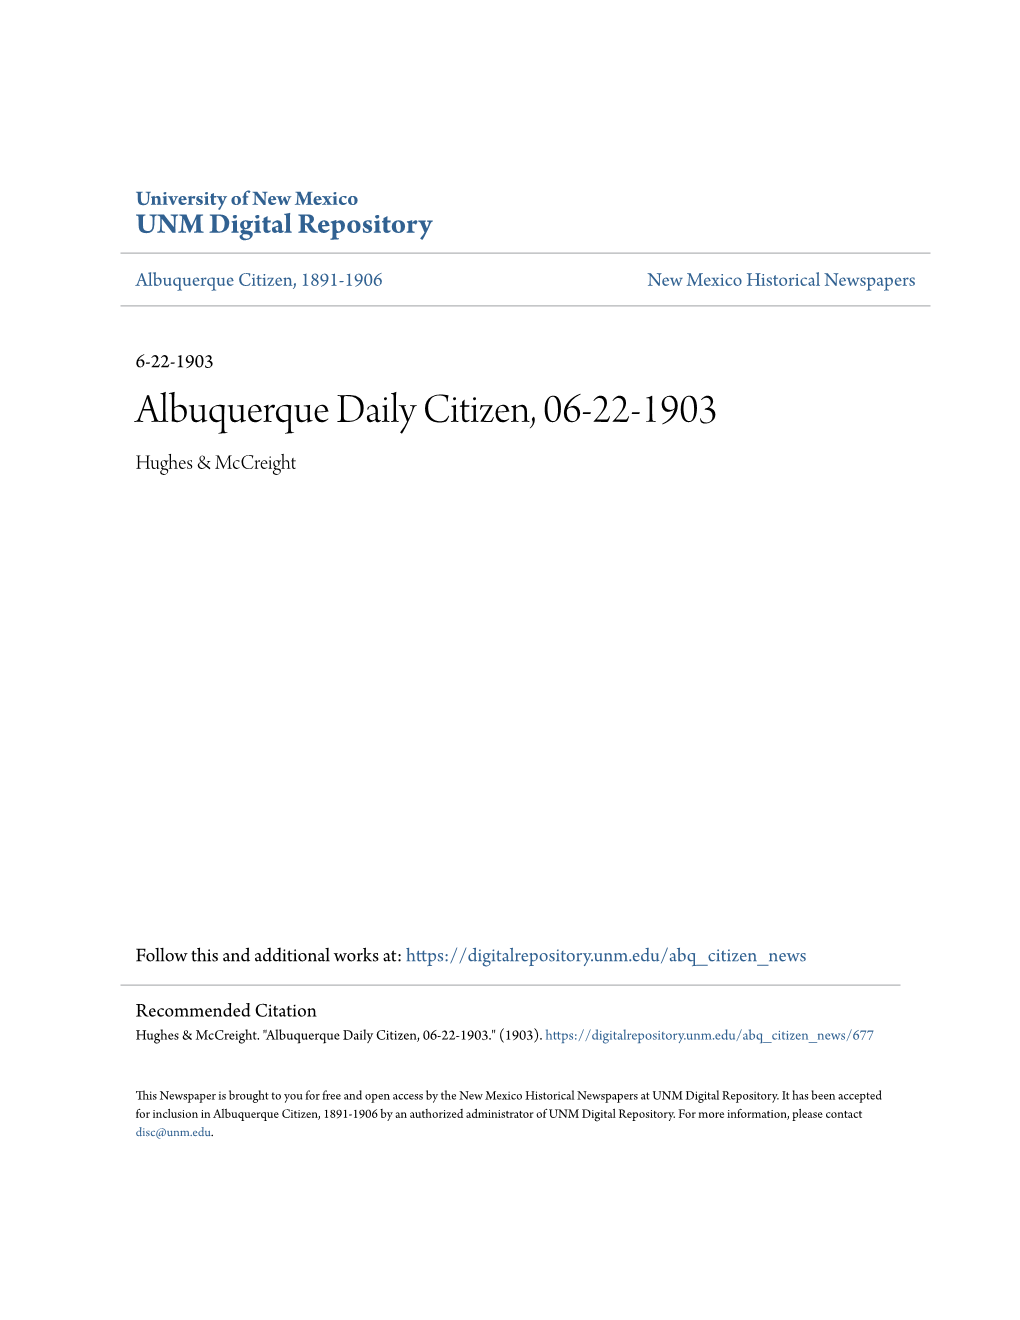 Albuquerque Daily Citizen, 06-22-1903 Hughes & Mccreight